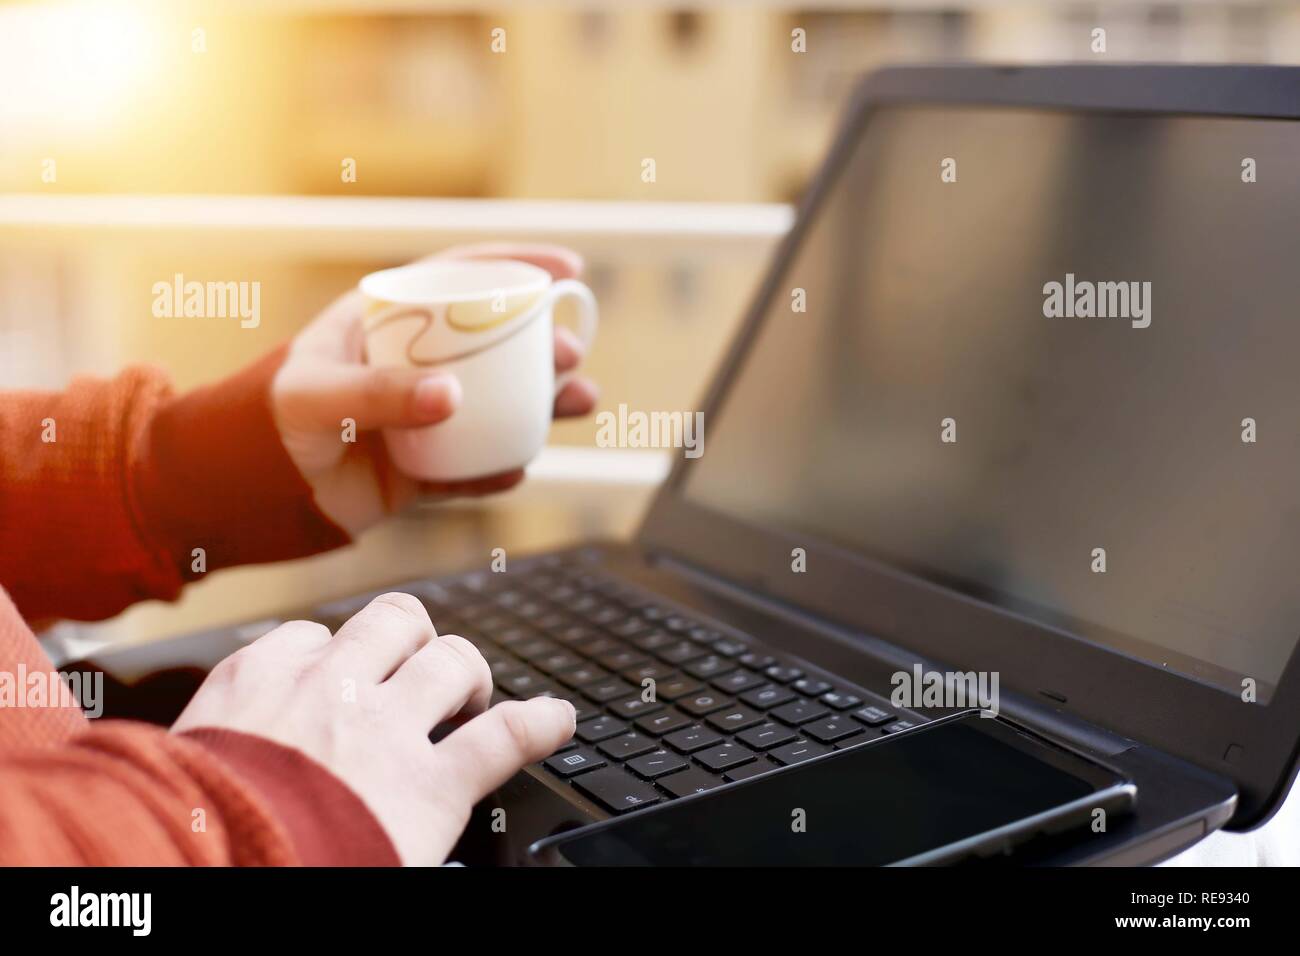 L'homme est de travailler sur l'ordinateur portable avec holding cup dans la main. Banque D'Images